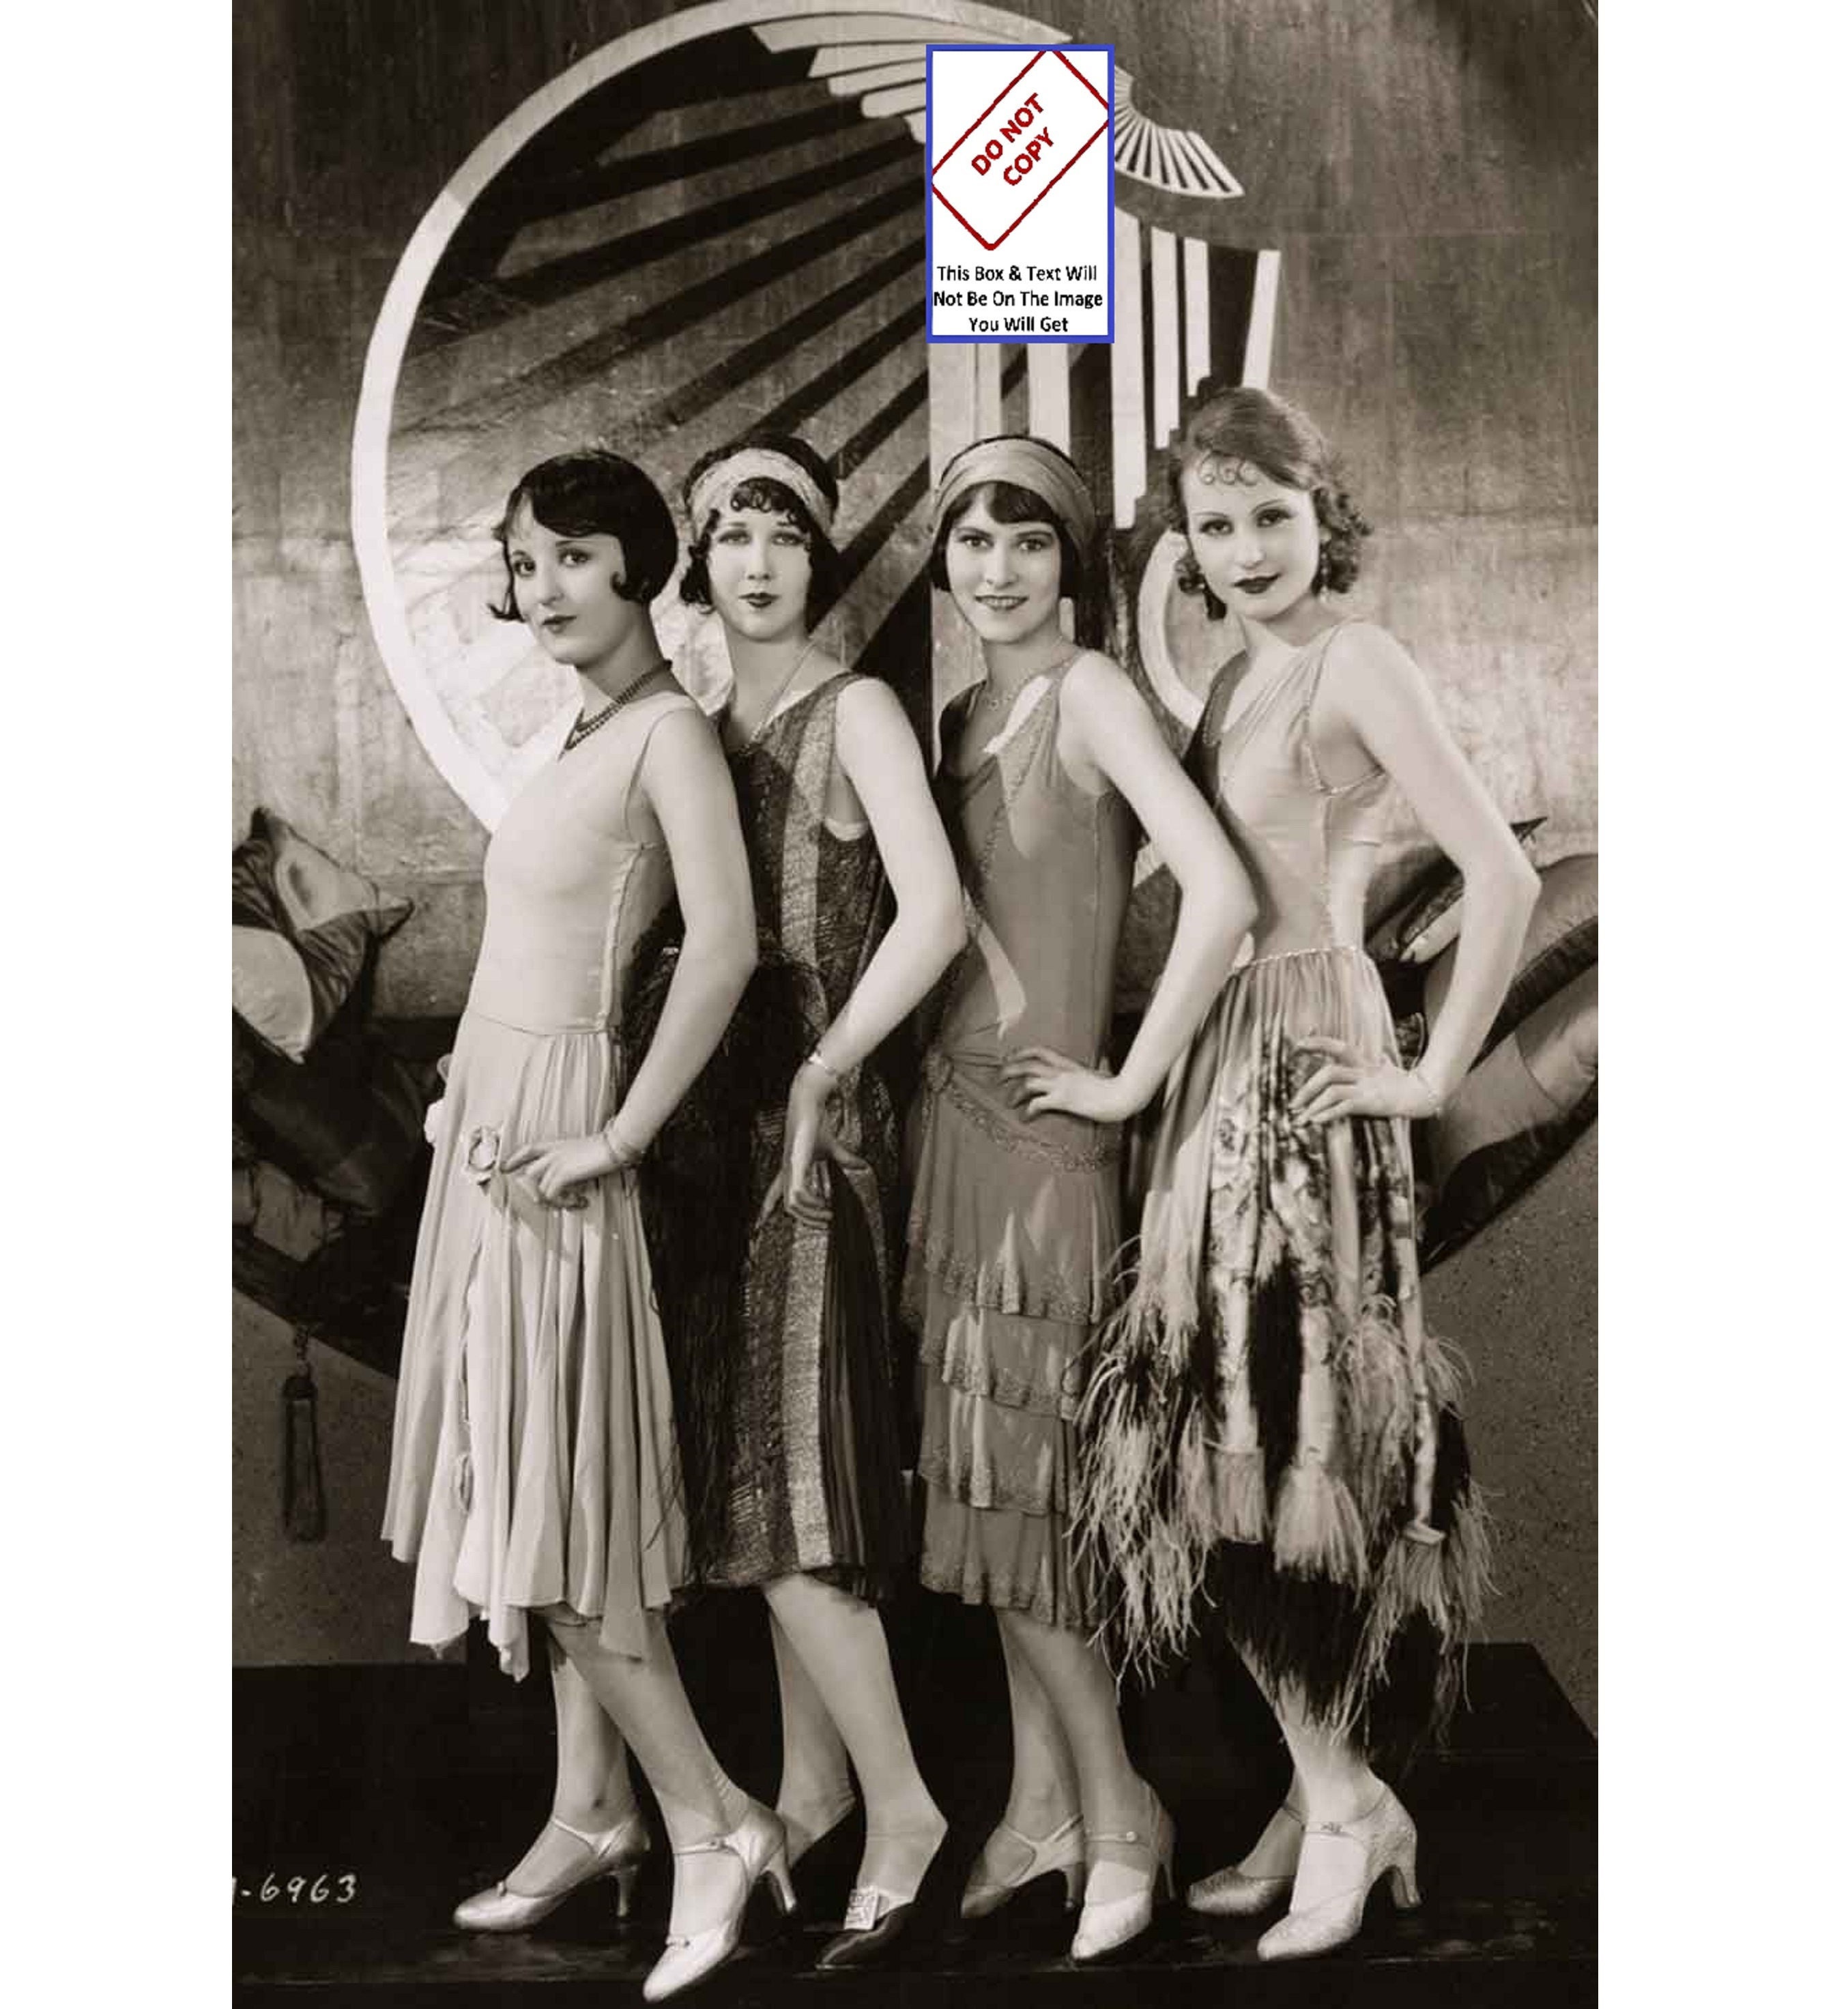 1920s Theme Party Decor